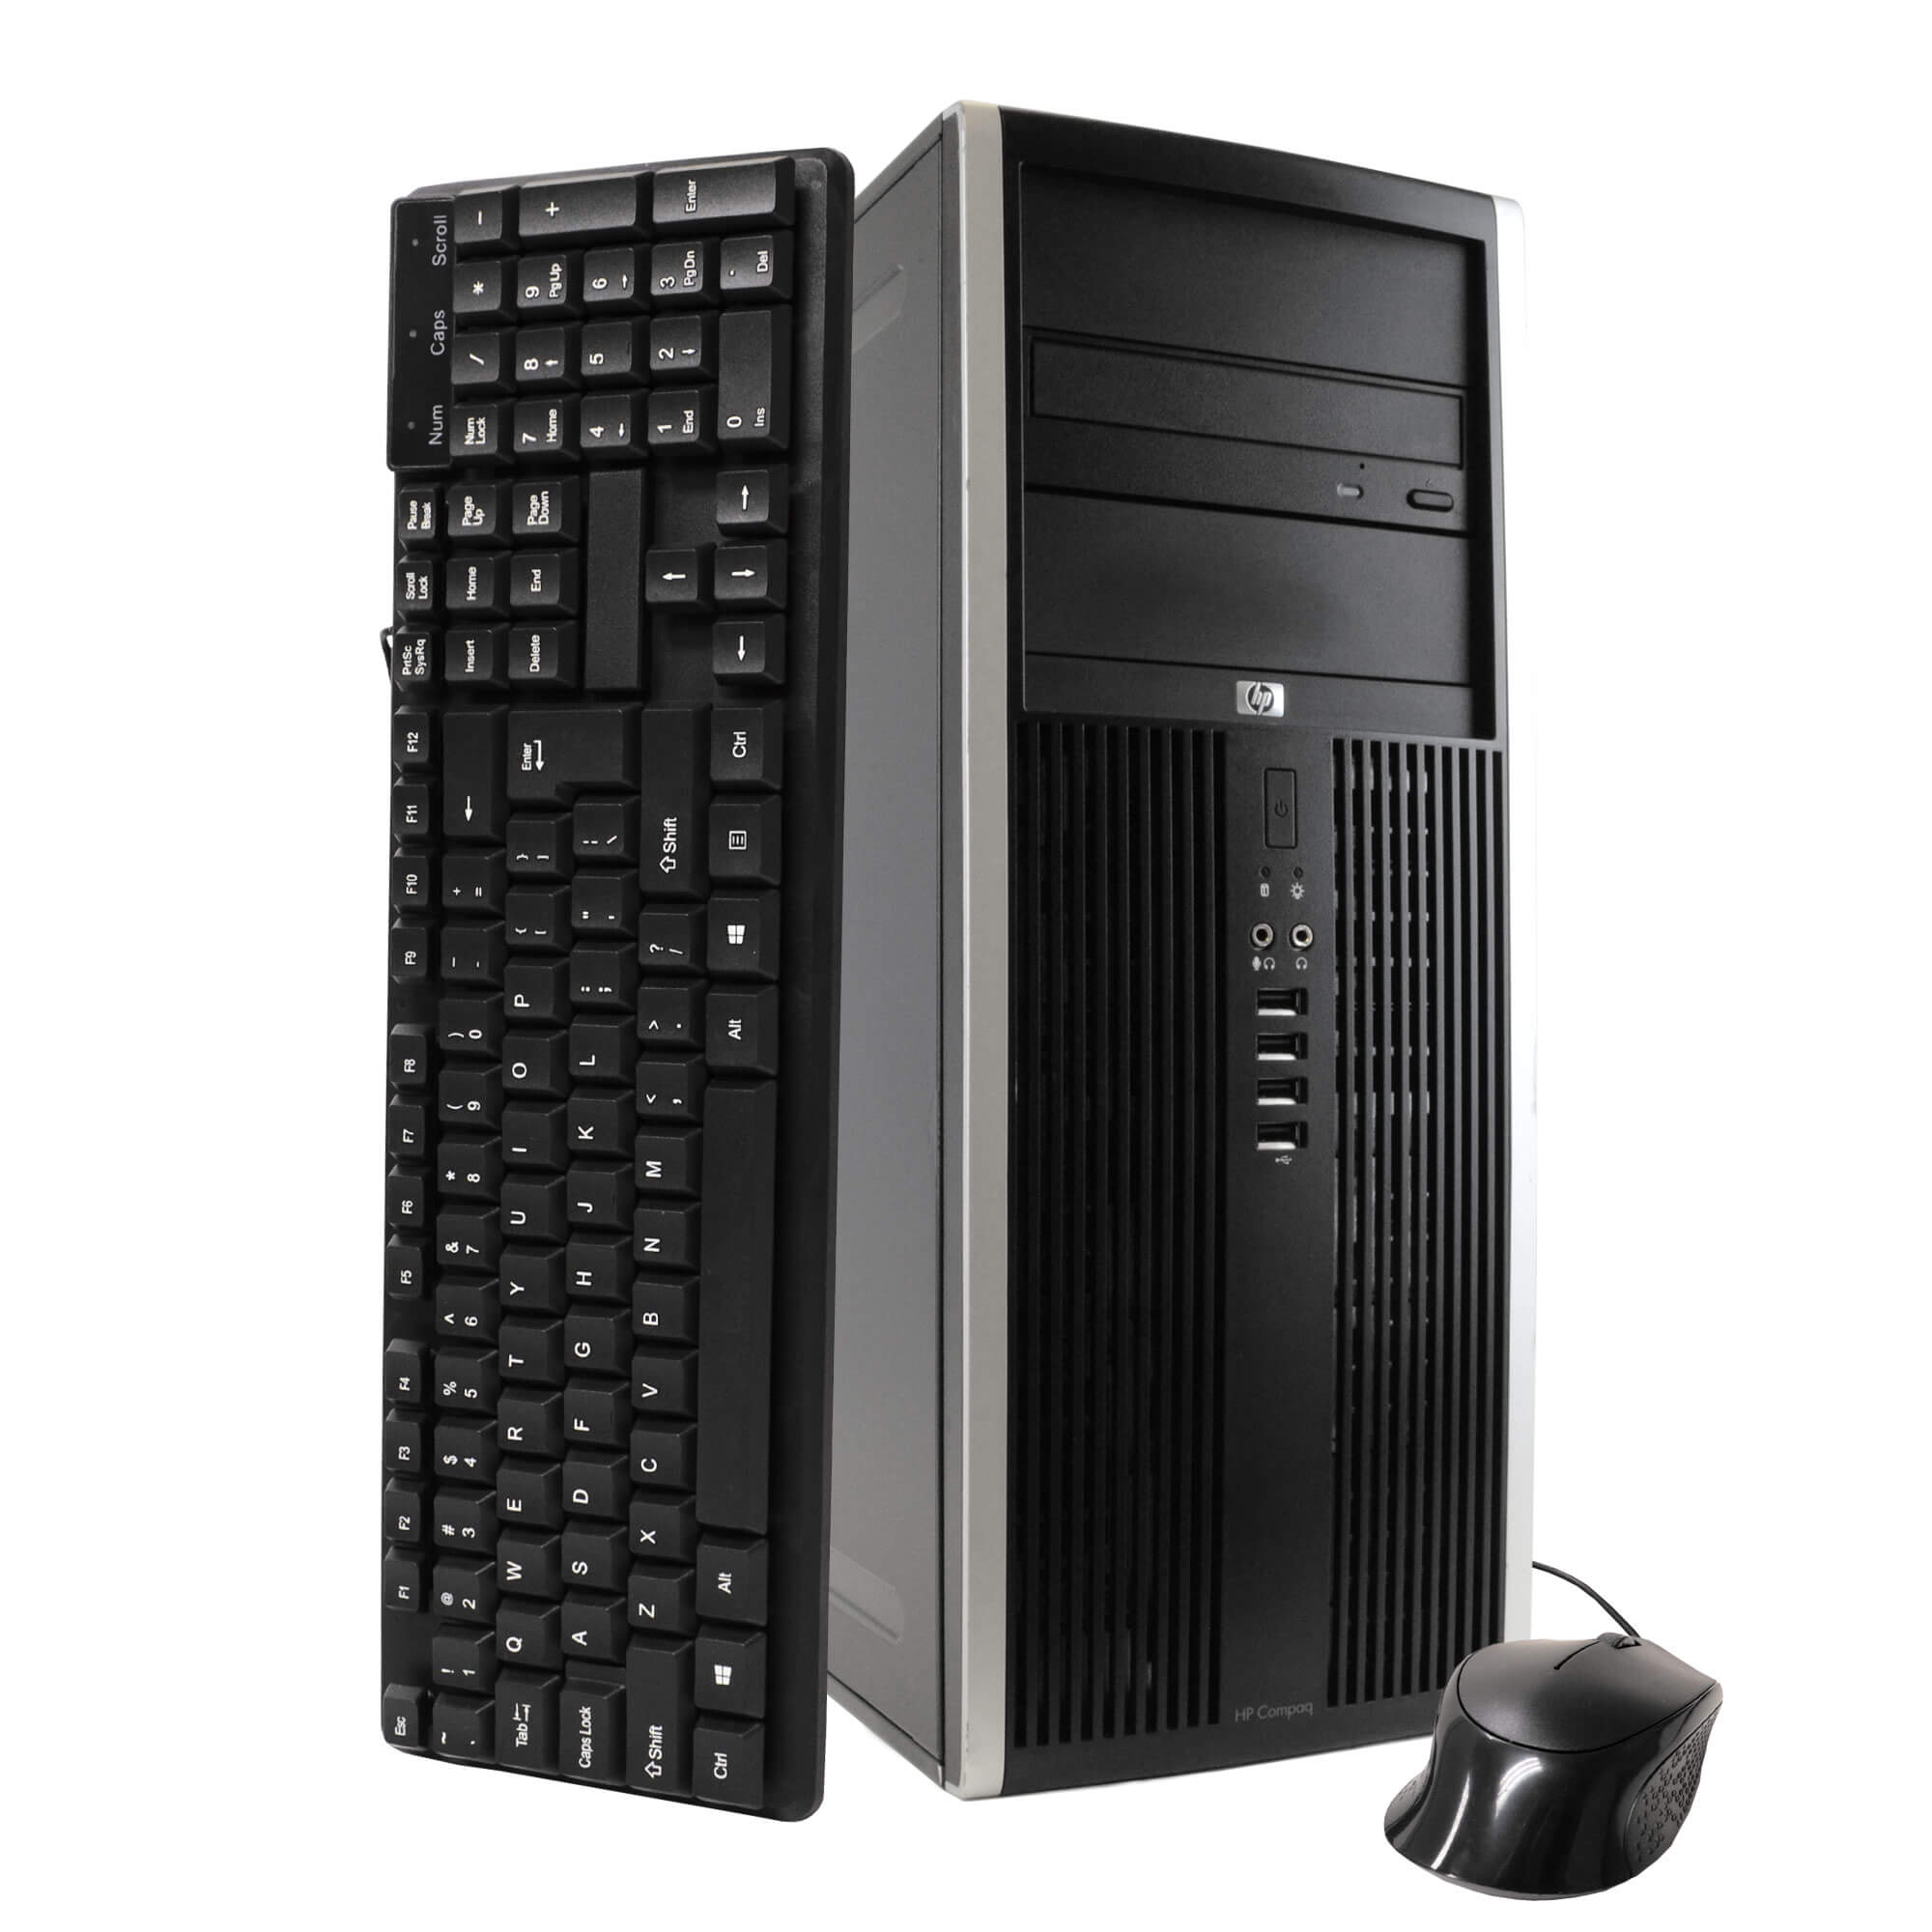 HP Compaq Elite 8100 Tower PC, 3.2GHz Intel i5 Dual Core Gen 1, 16GB RAM, 240GB SSD, Windows 10 Professional 64 bit, 22" Screen (Renewed)